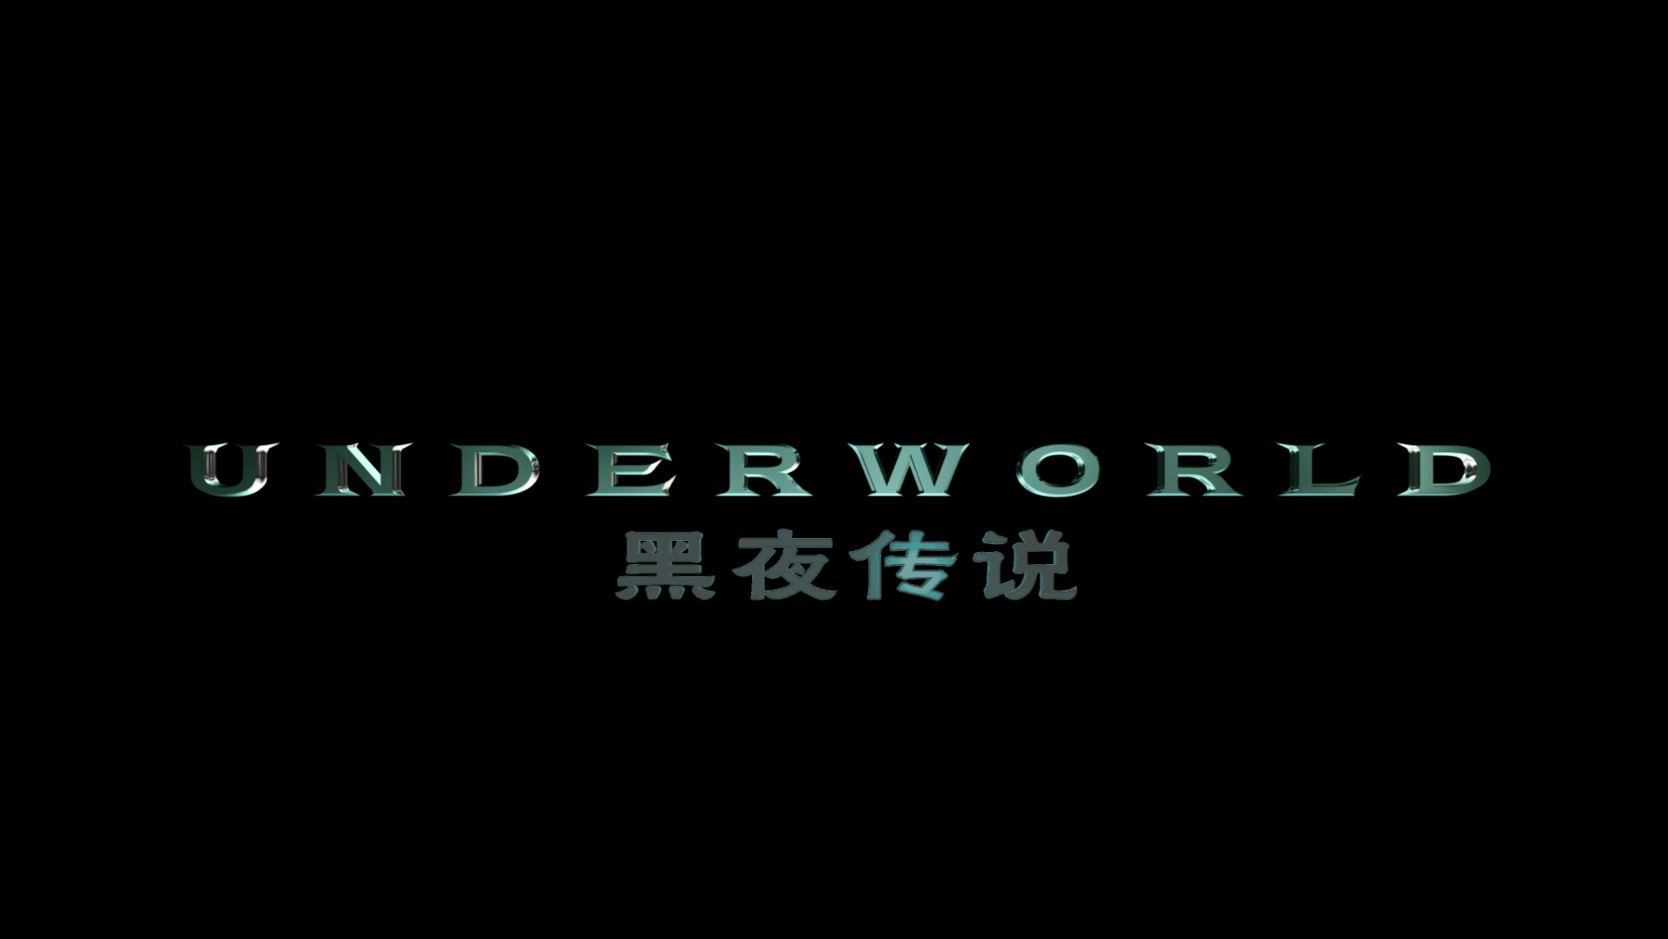 黑夜传说[DIY国语音轨+国配简繁/简繁英双语字幕]央视国配纯中文版[未删减双版] Underworld 2003 Unrated 2160p UHD Blu-ray TrueHD 7 1-PWt@OurBits[113.83GB]-3.jpg